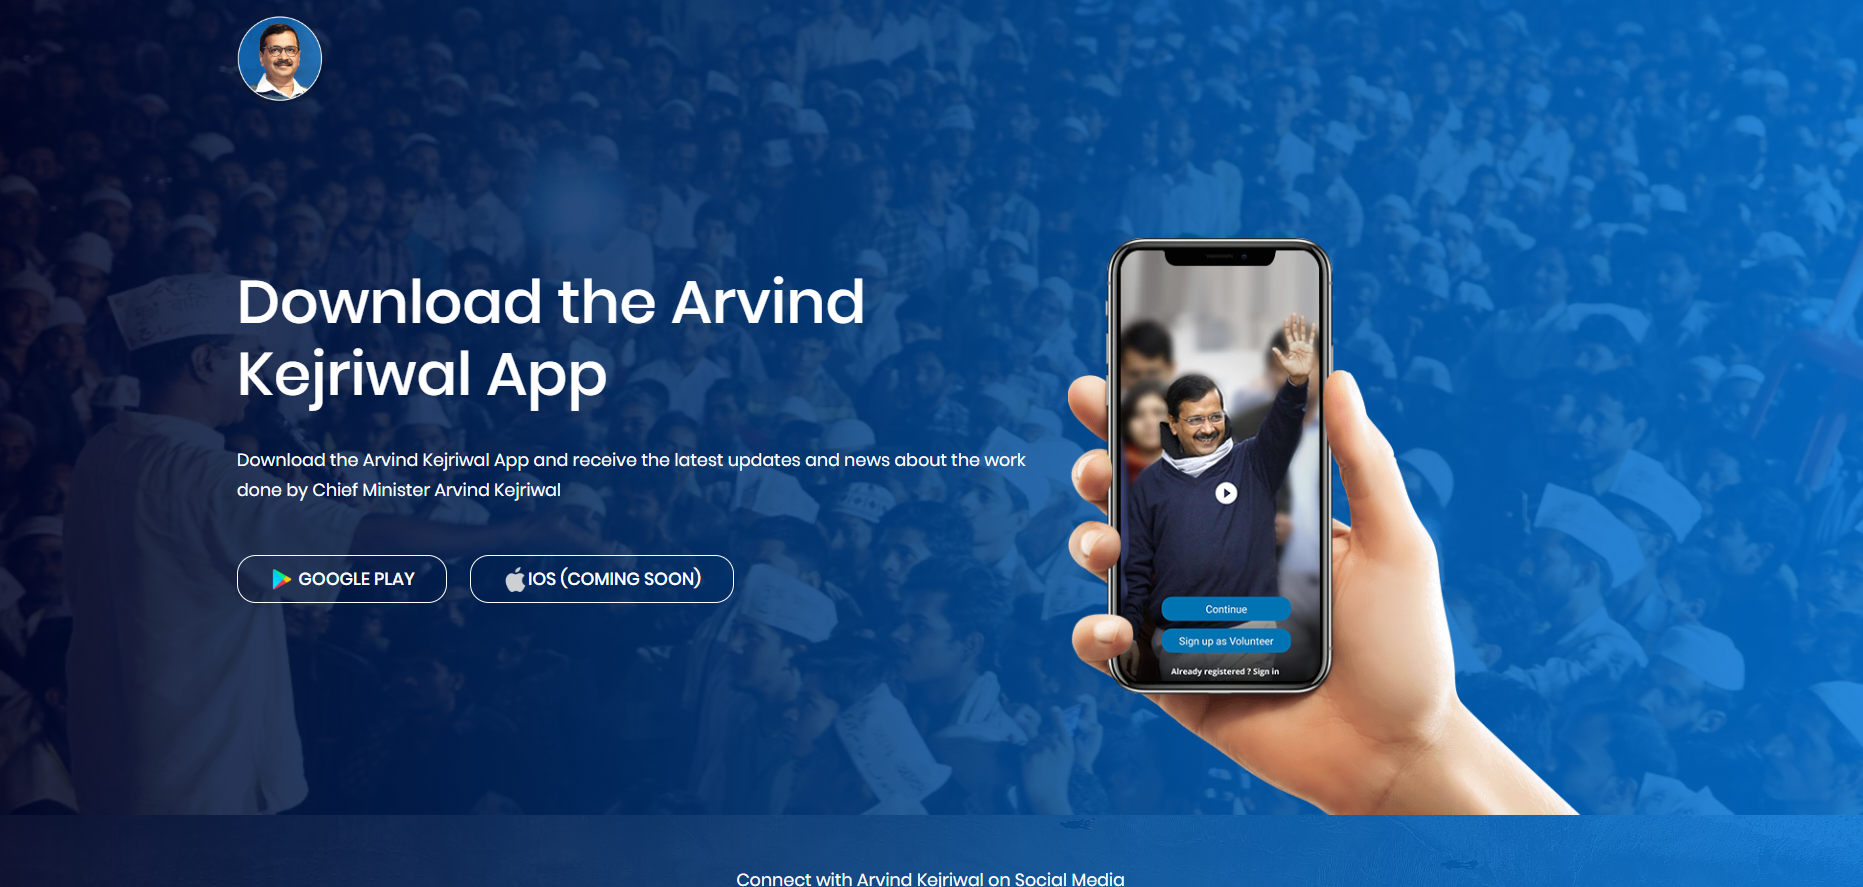 ak-app-arvind-kejriwal